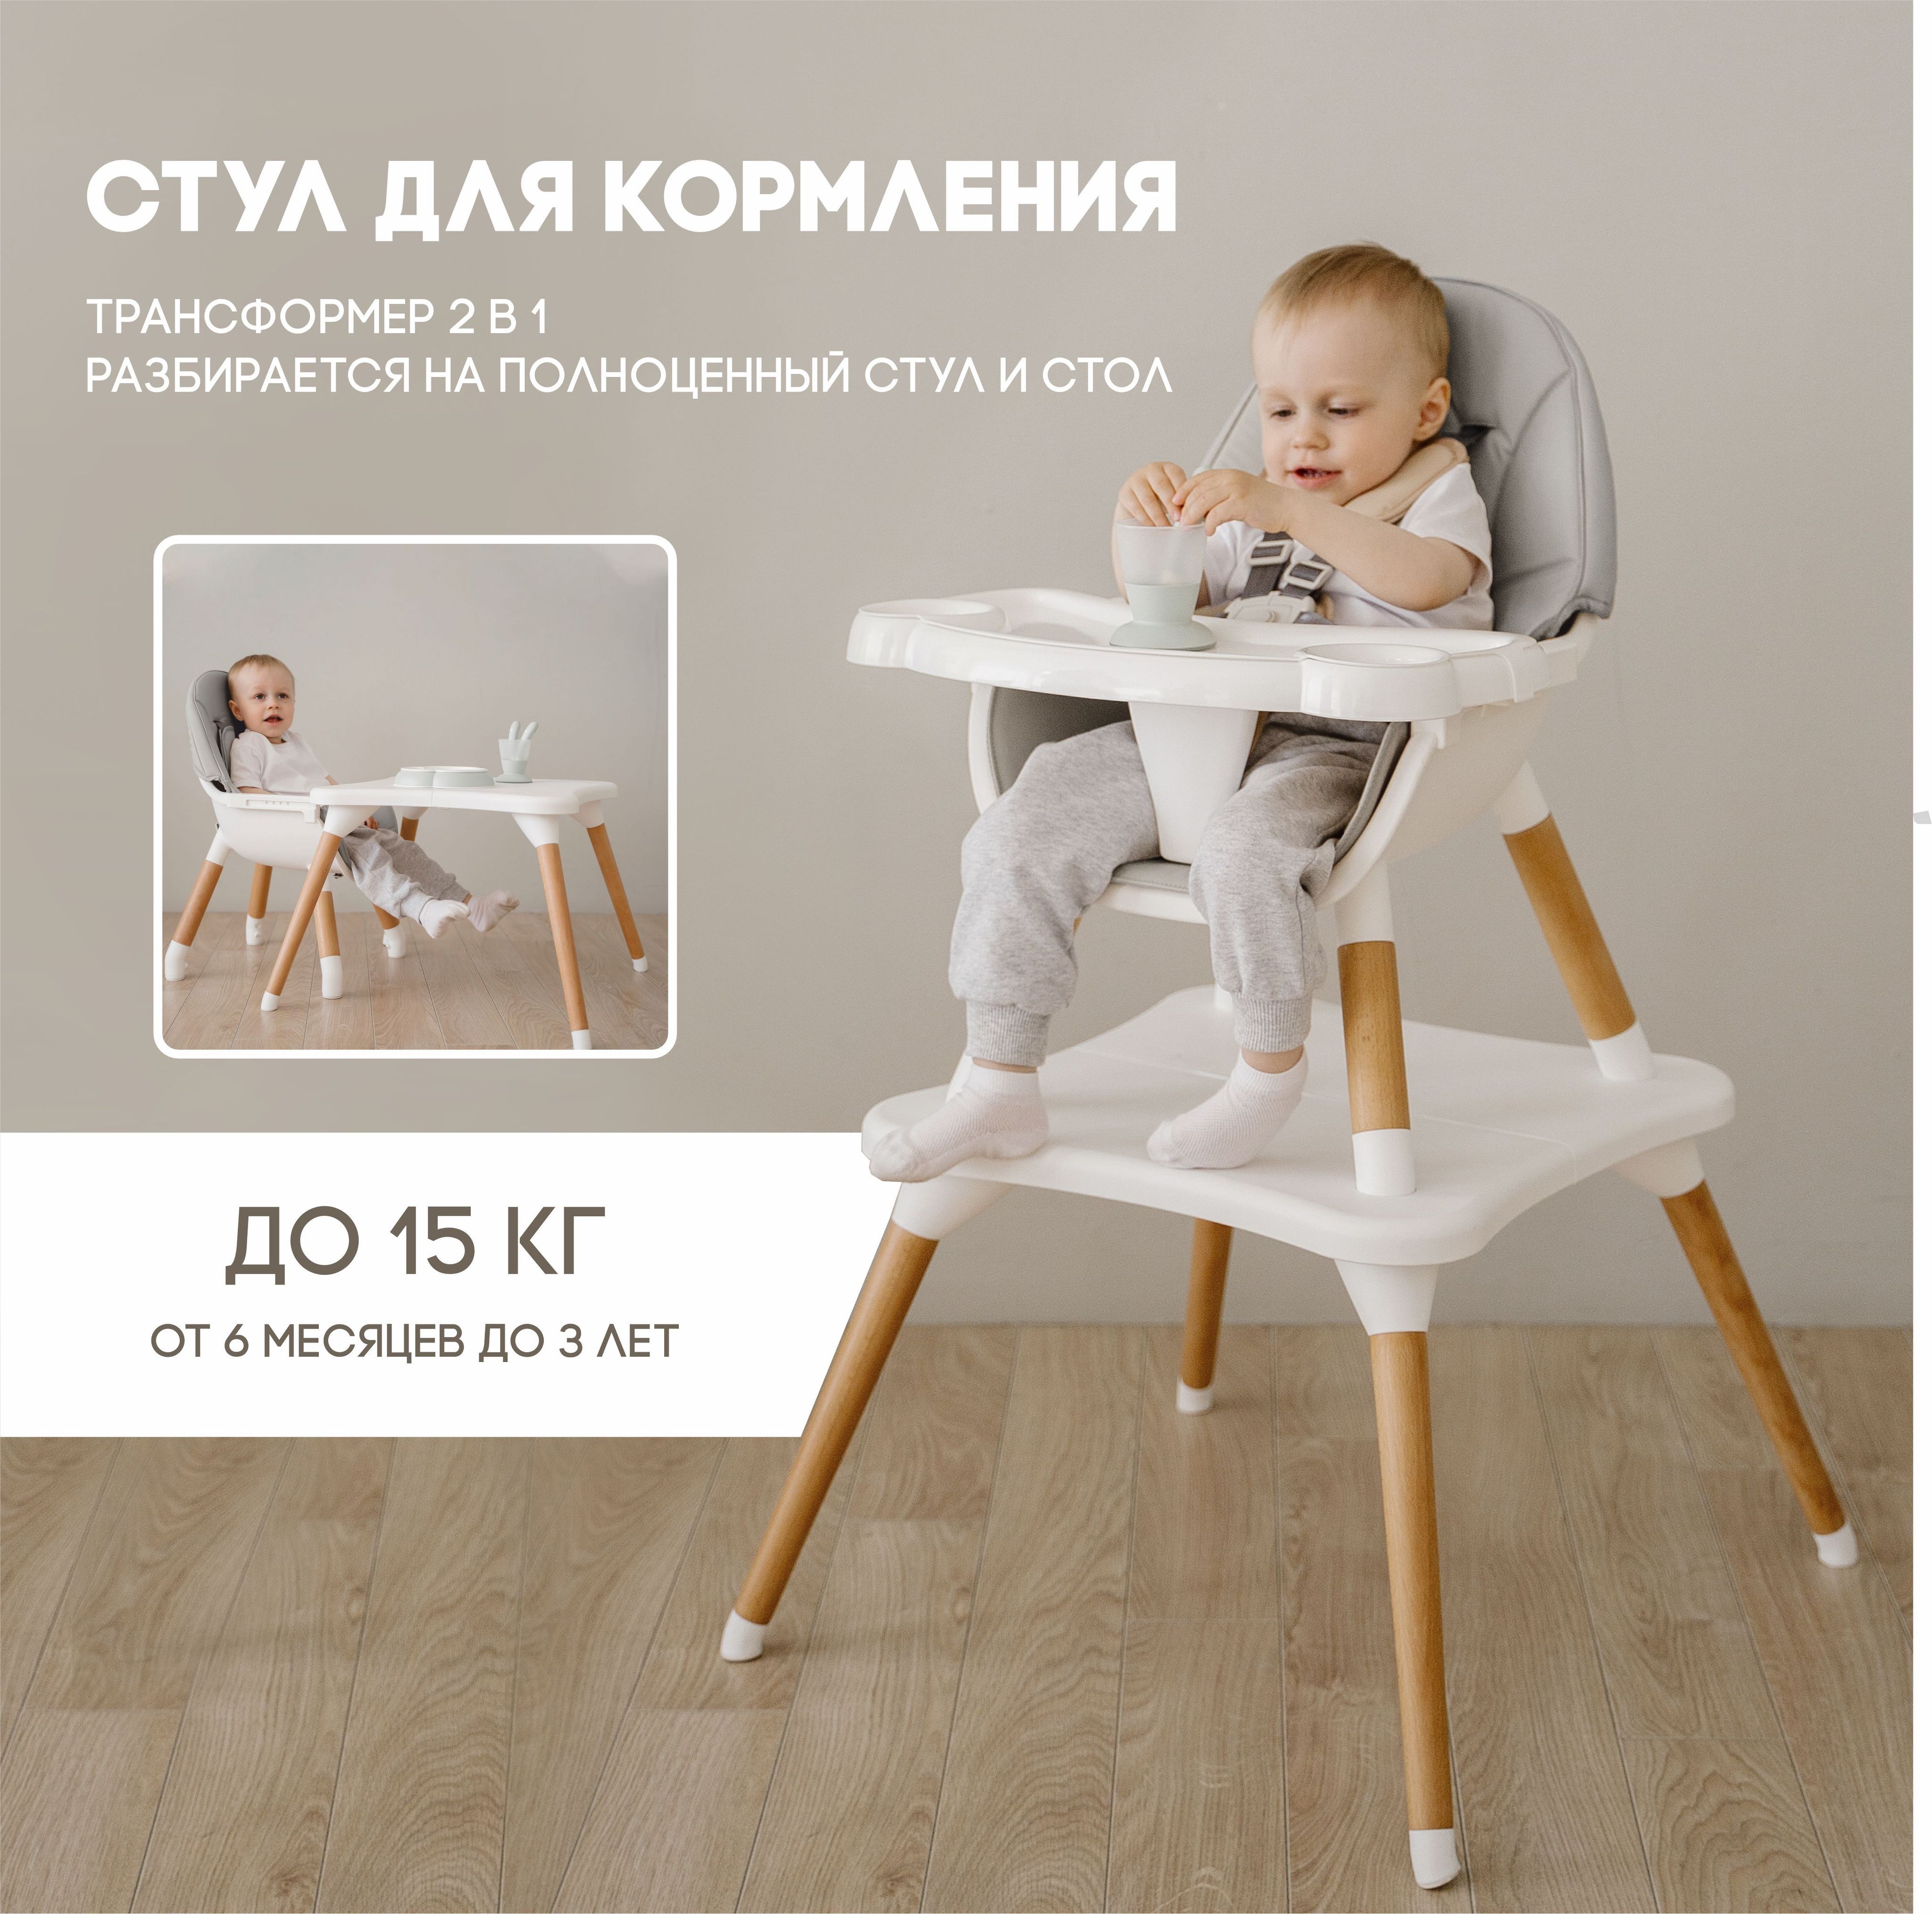 Стульчики для кормления, Детская мебель купить недорого в магазине в Челябинске, цена